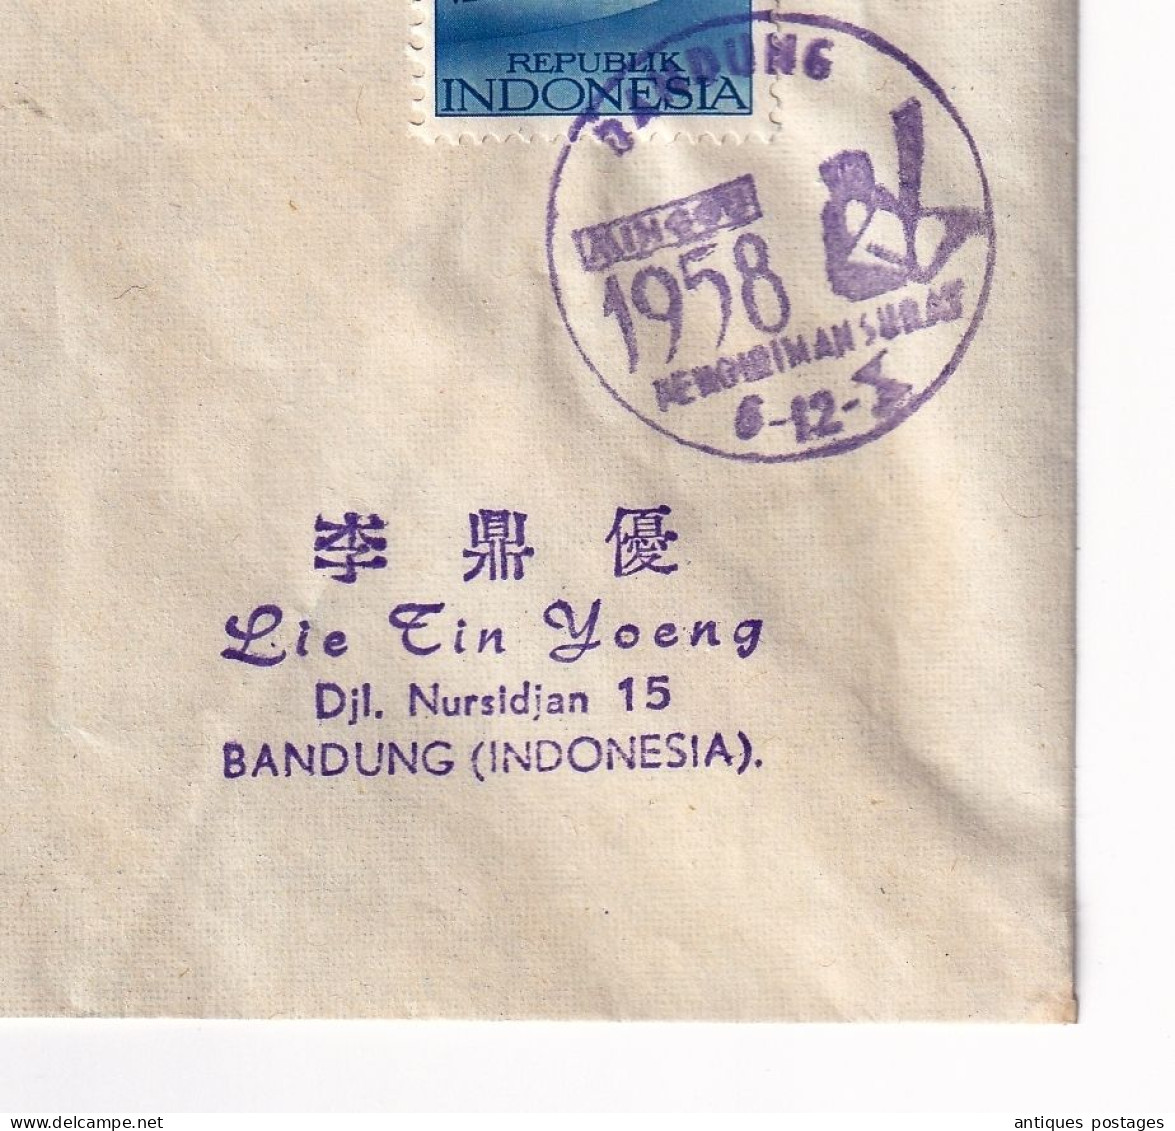 Lettre 1958 Indonésie Indonésia Bandung Bandoeng Java International Letter Writting Week Minggu Pengiriman Surat - Indonesia